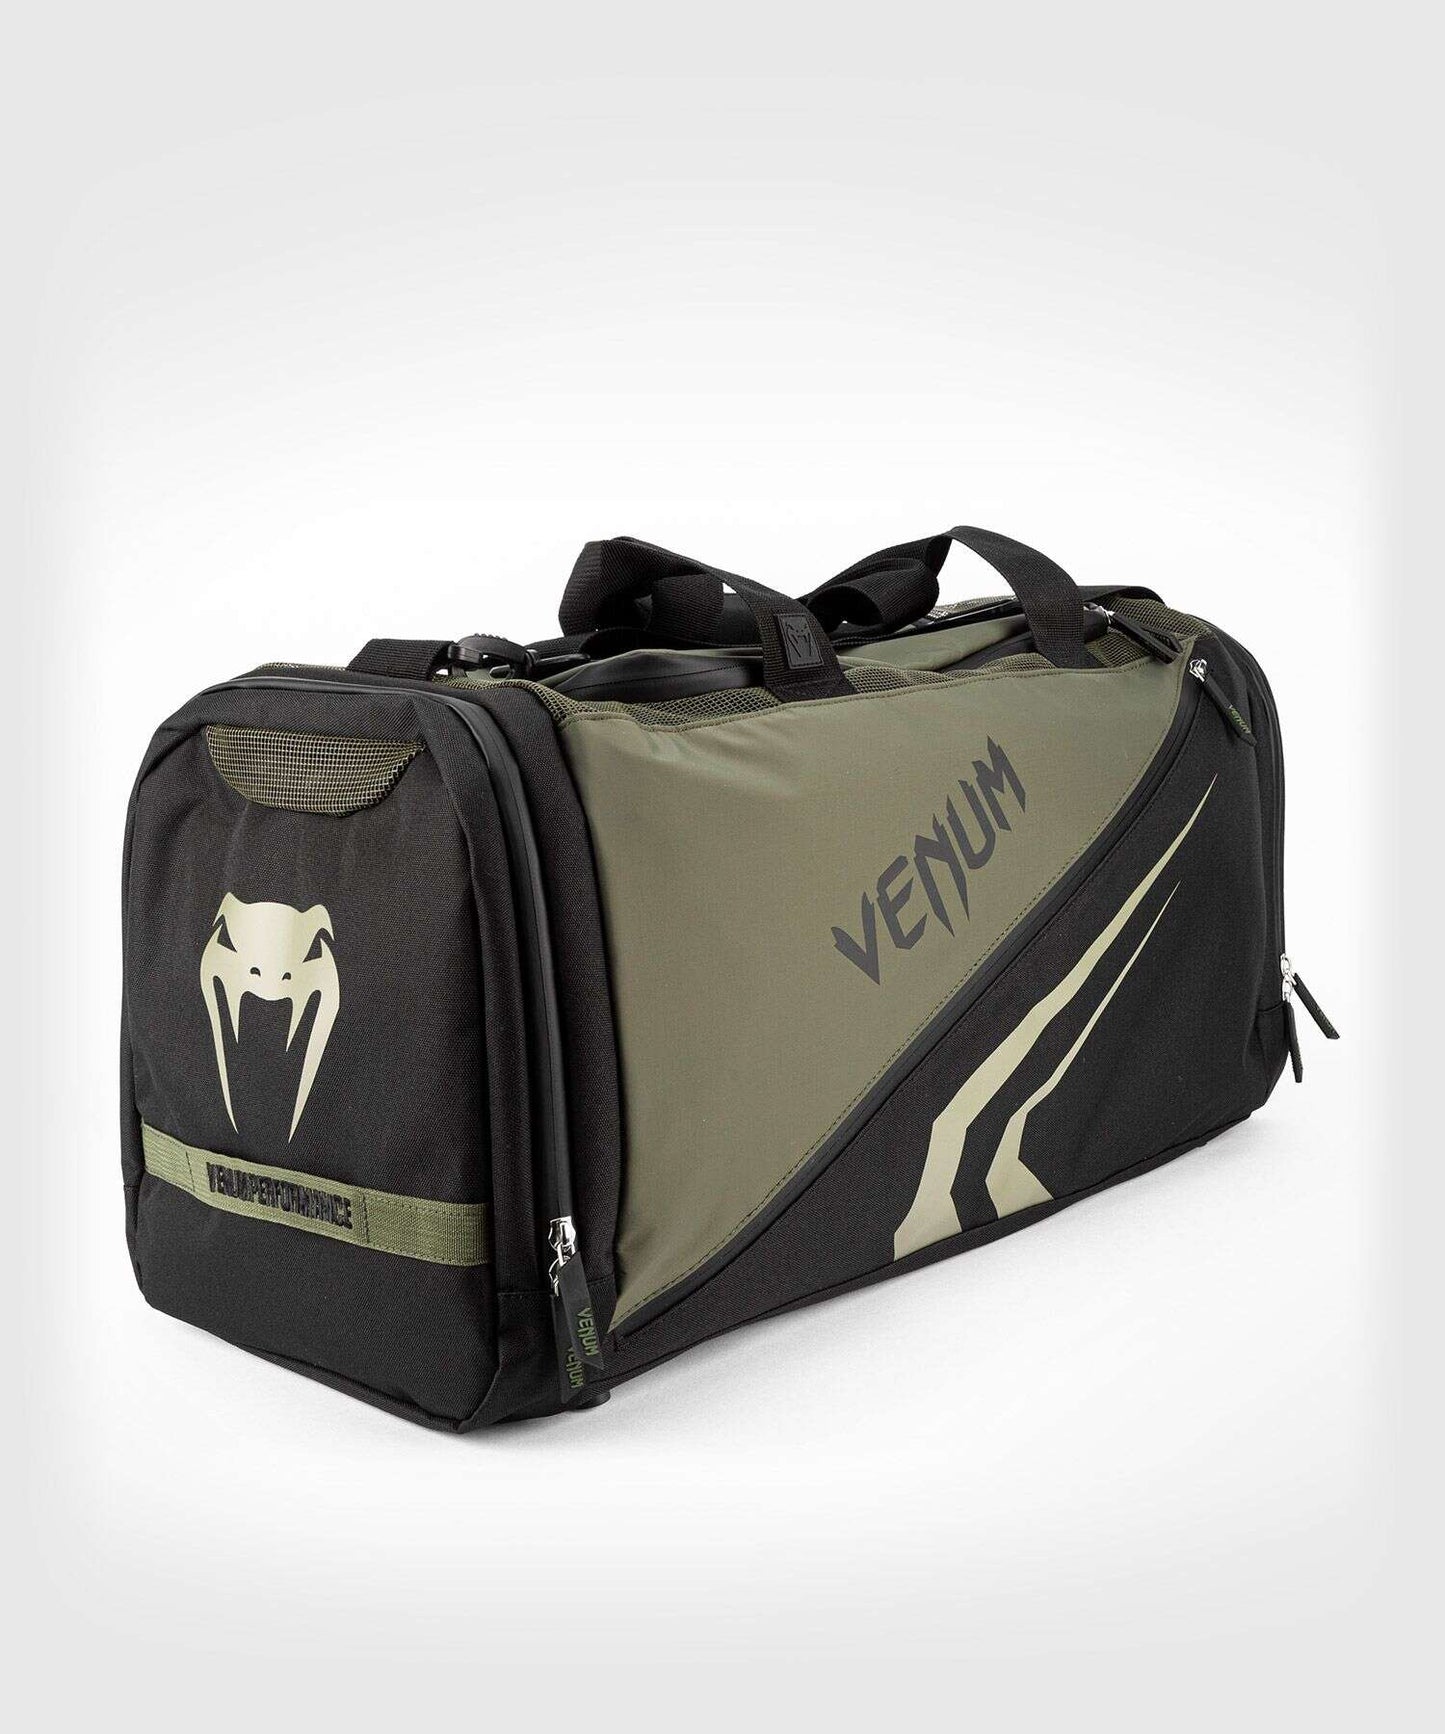 Trainer Lite Evo Sports Bag-Khaki/Black